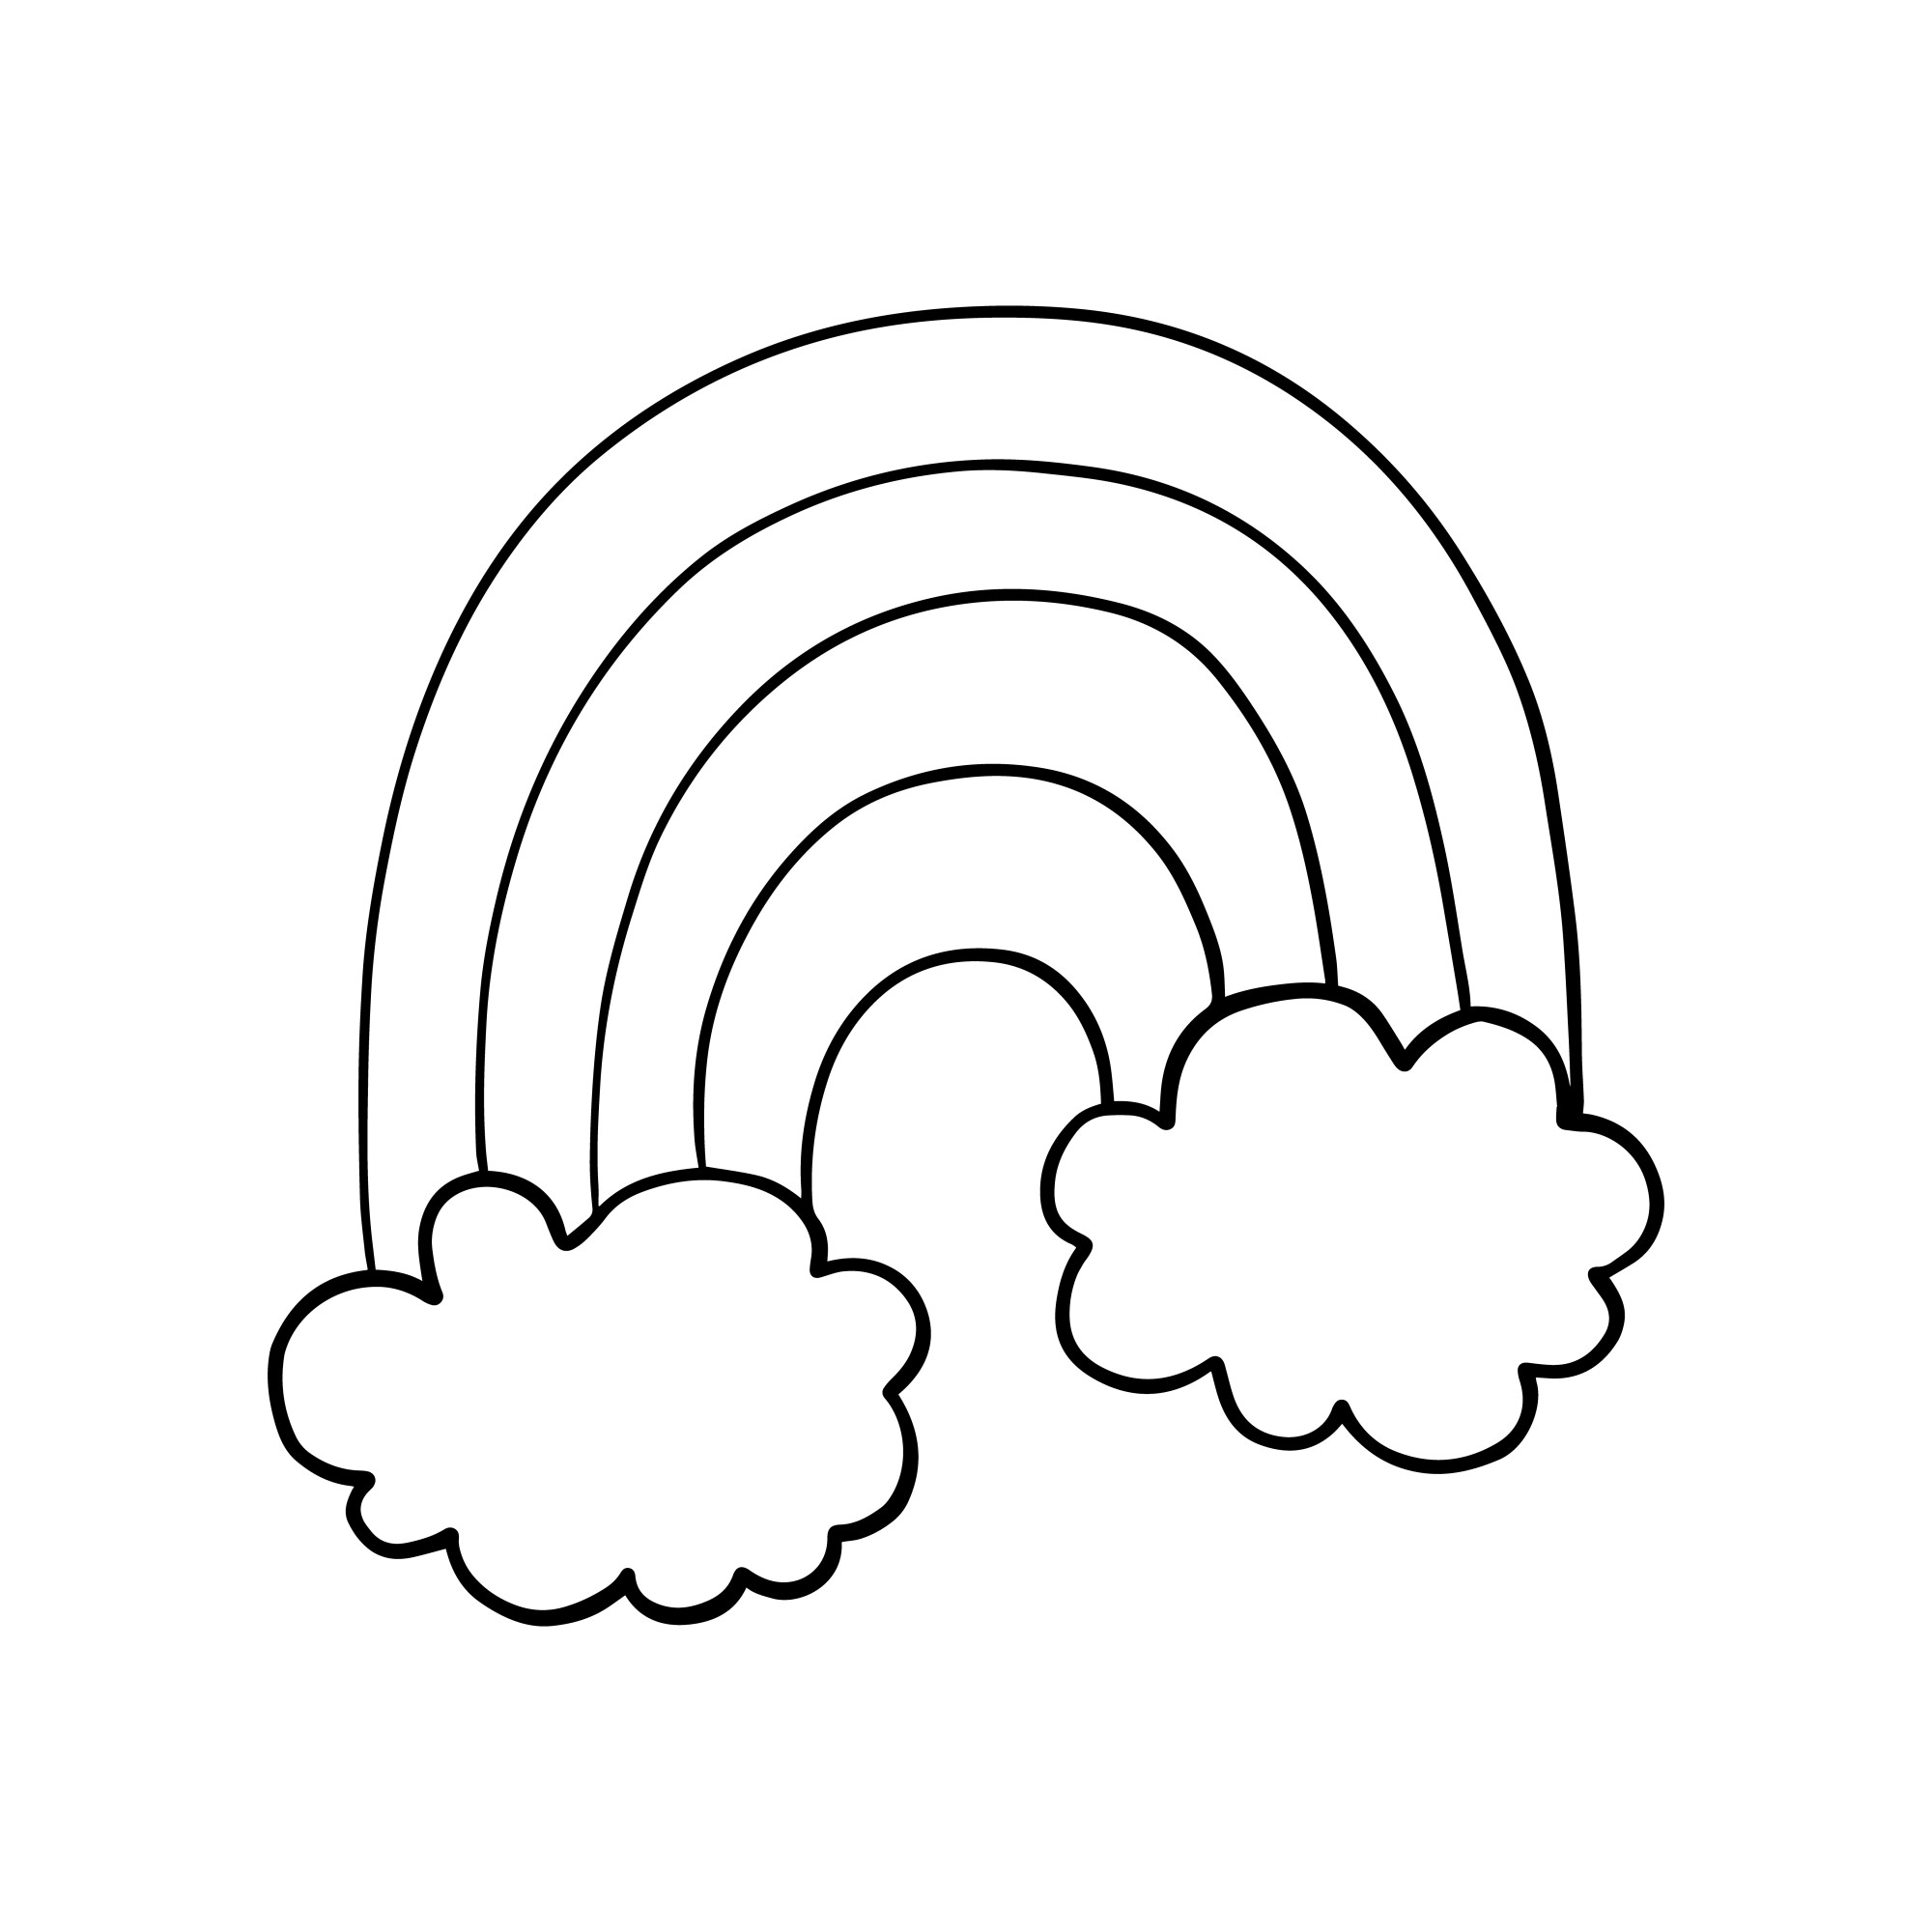 Раскраска для детей: радужные облака